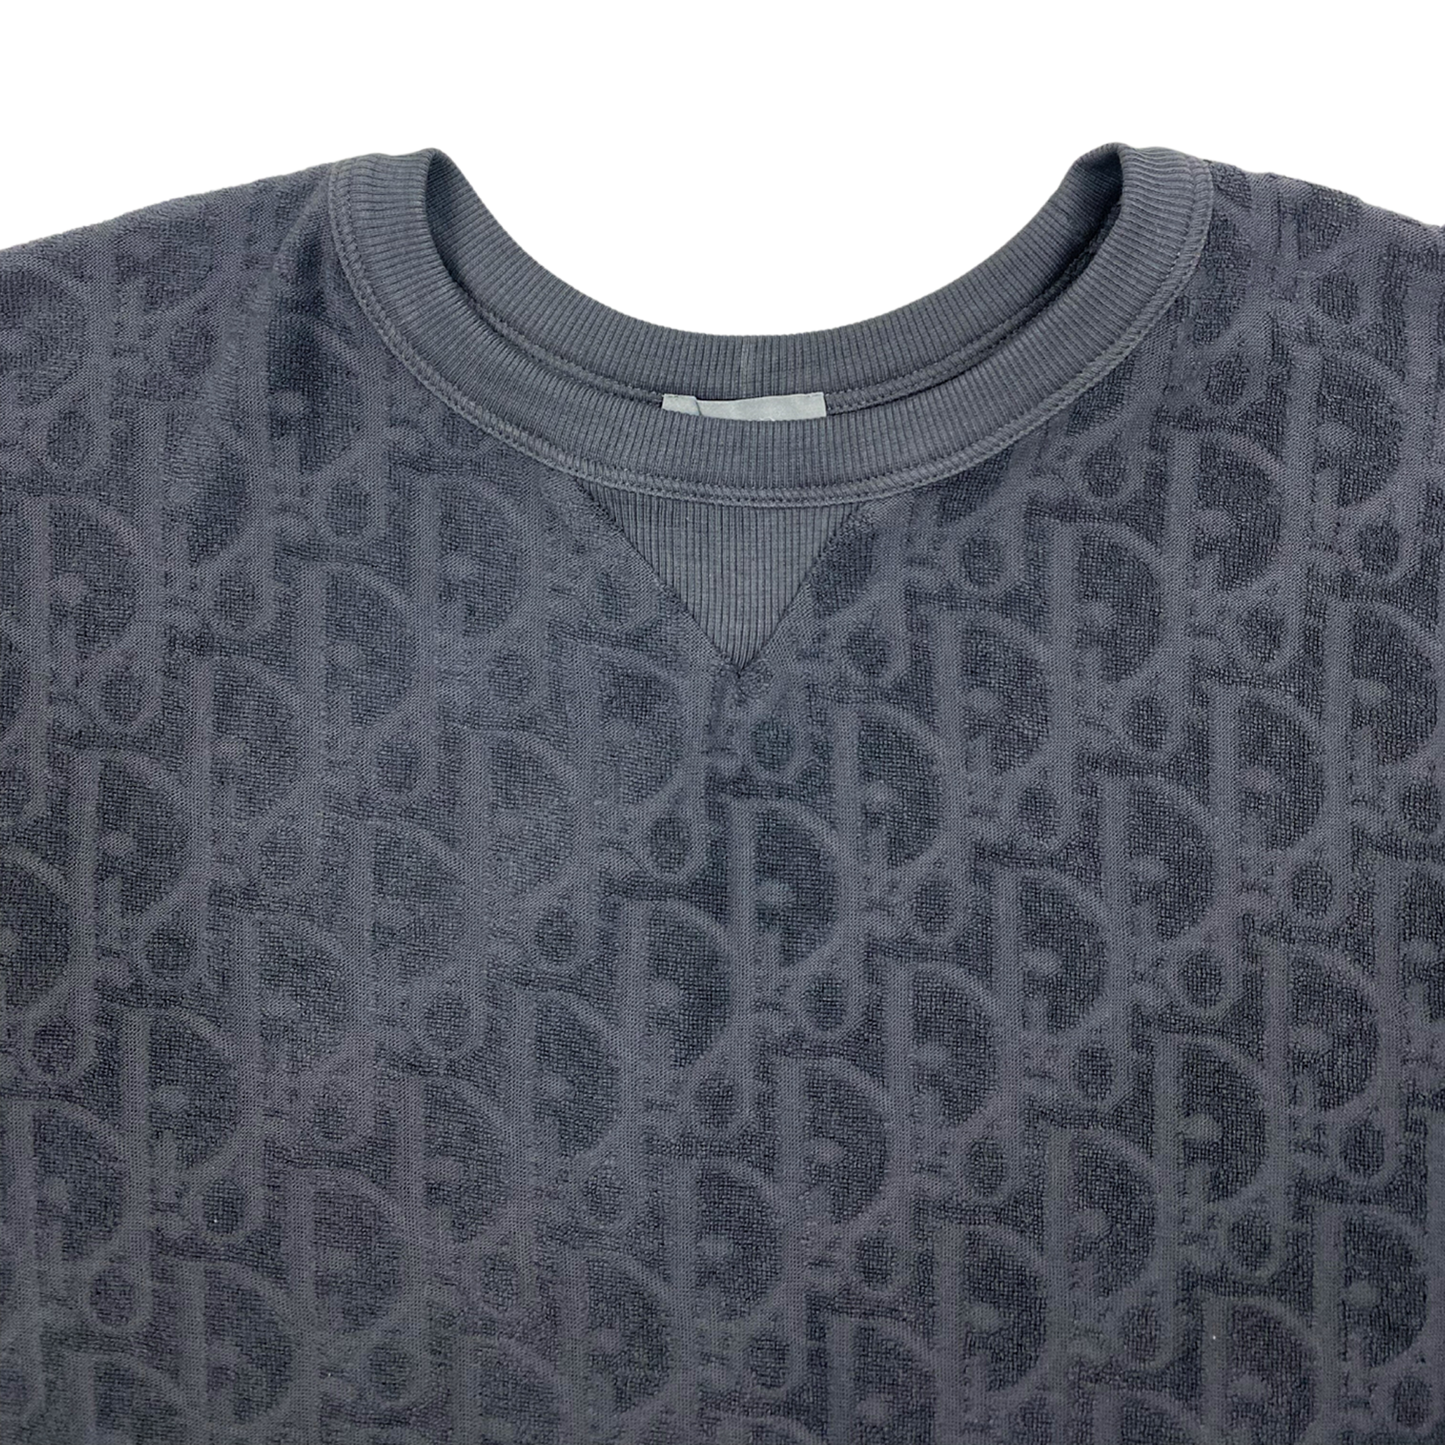 T-shirt Dior oblique gris foncé coupe relax